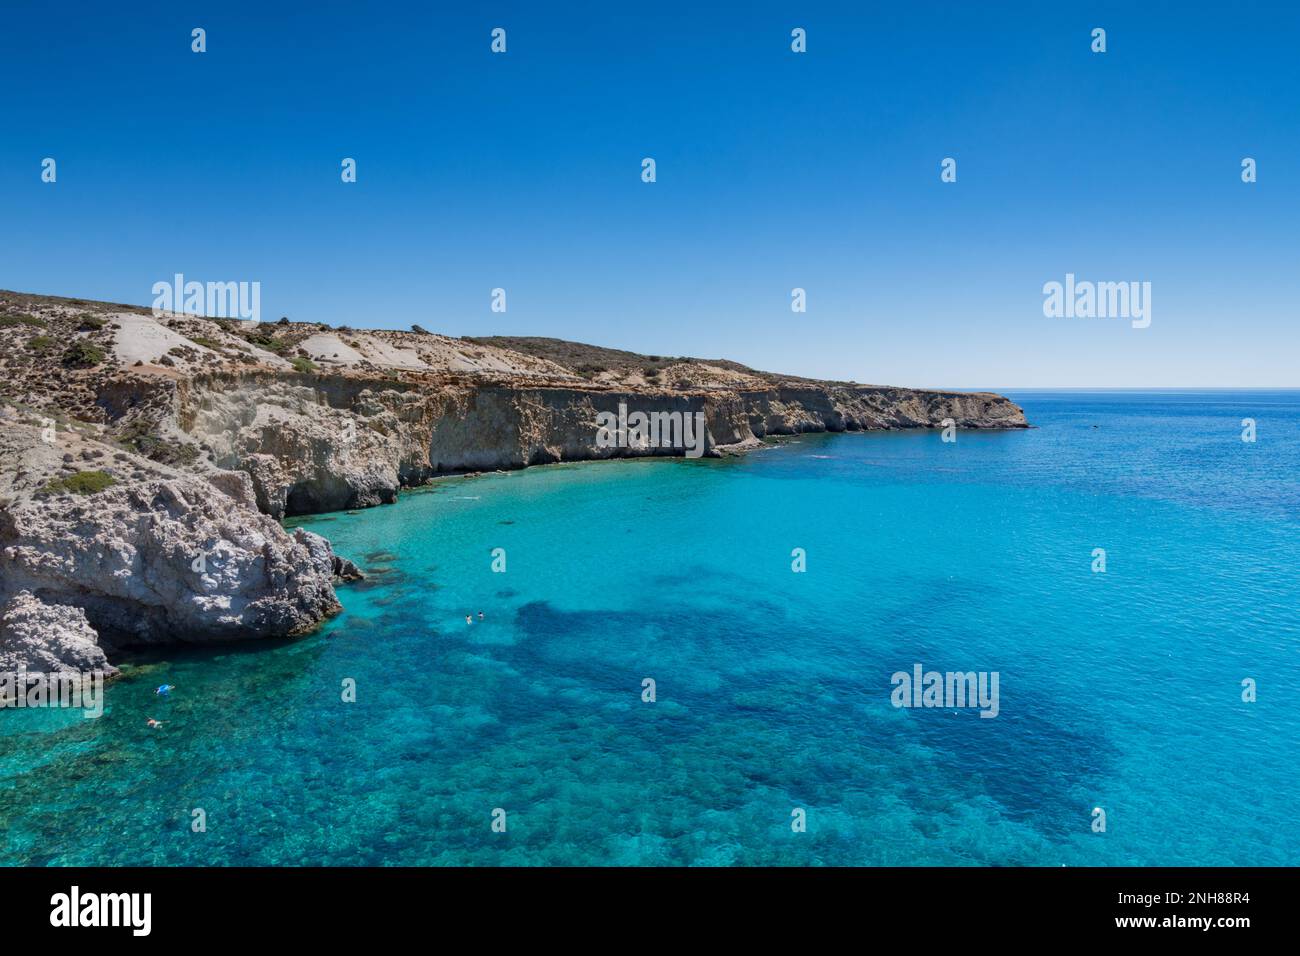 The coasts of Milos island seen from Tsigrado beach Stock Photo